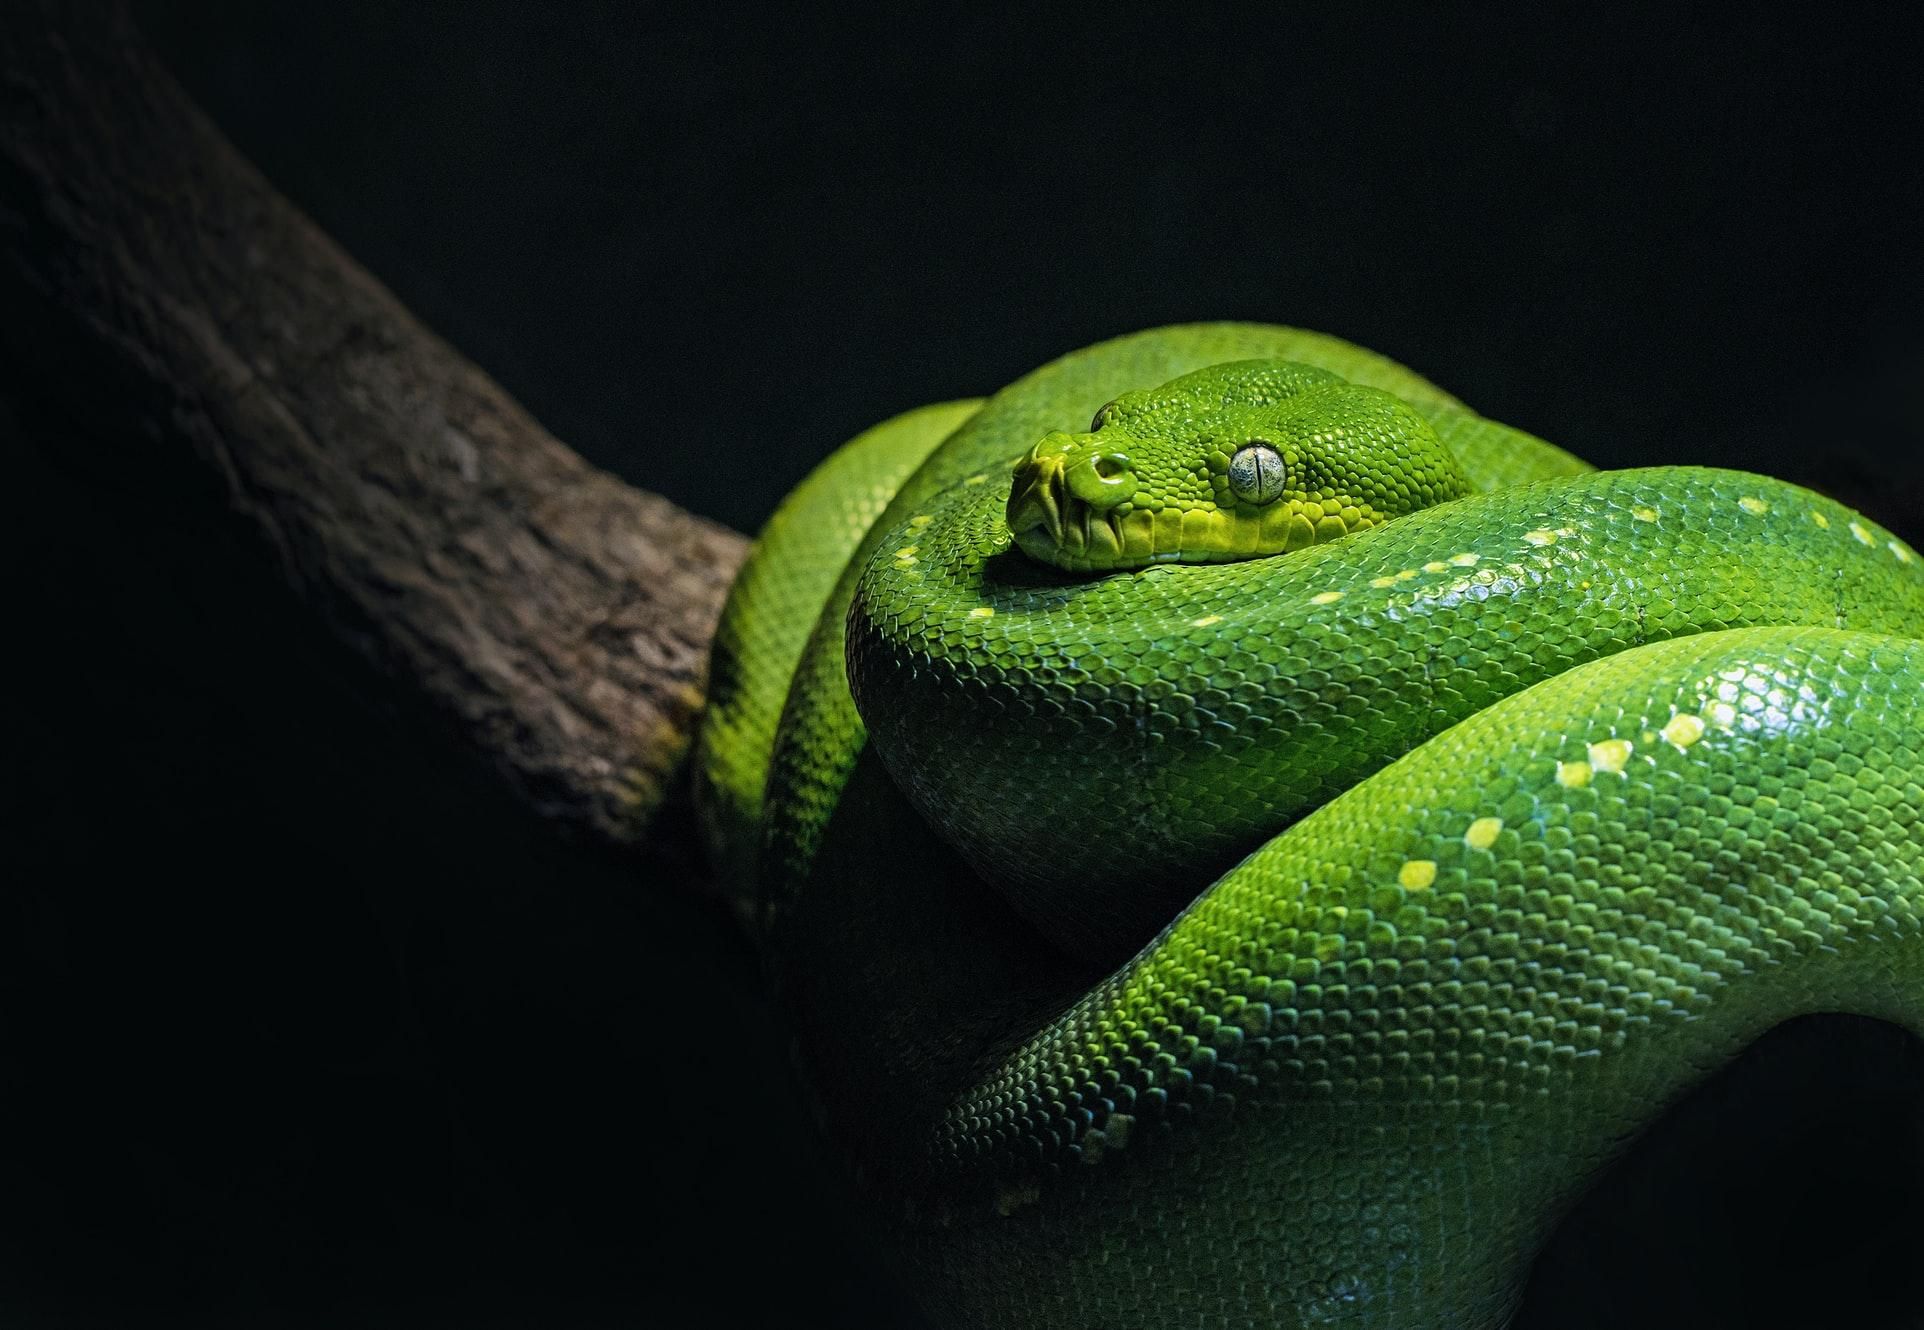 Всесвітній день змій: 10 маловідомих фактів про цих плазунів